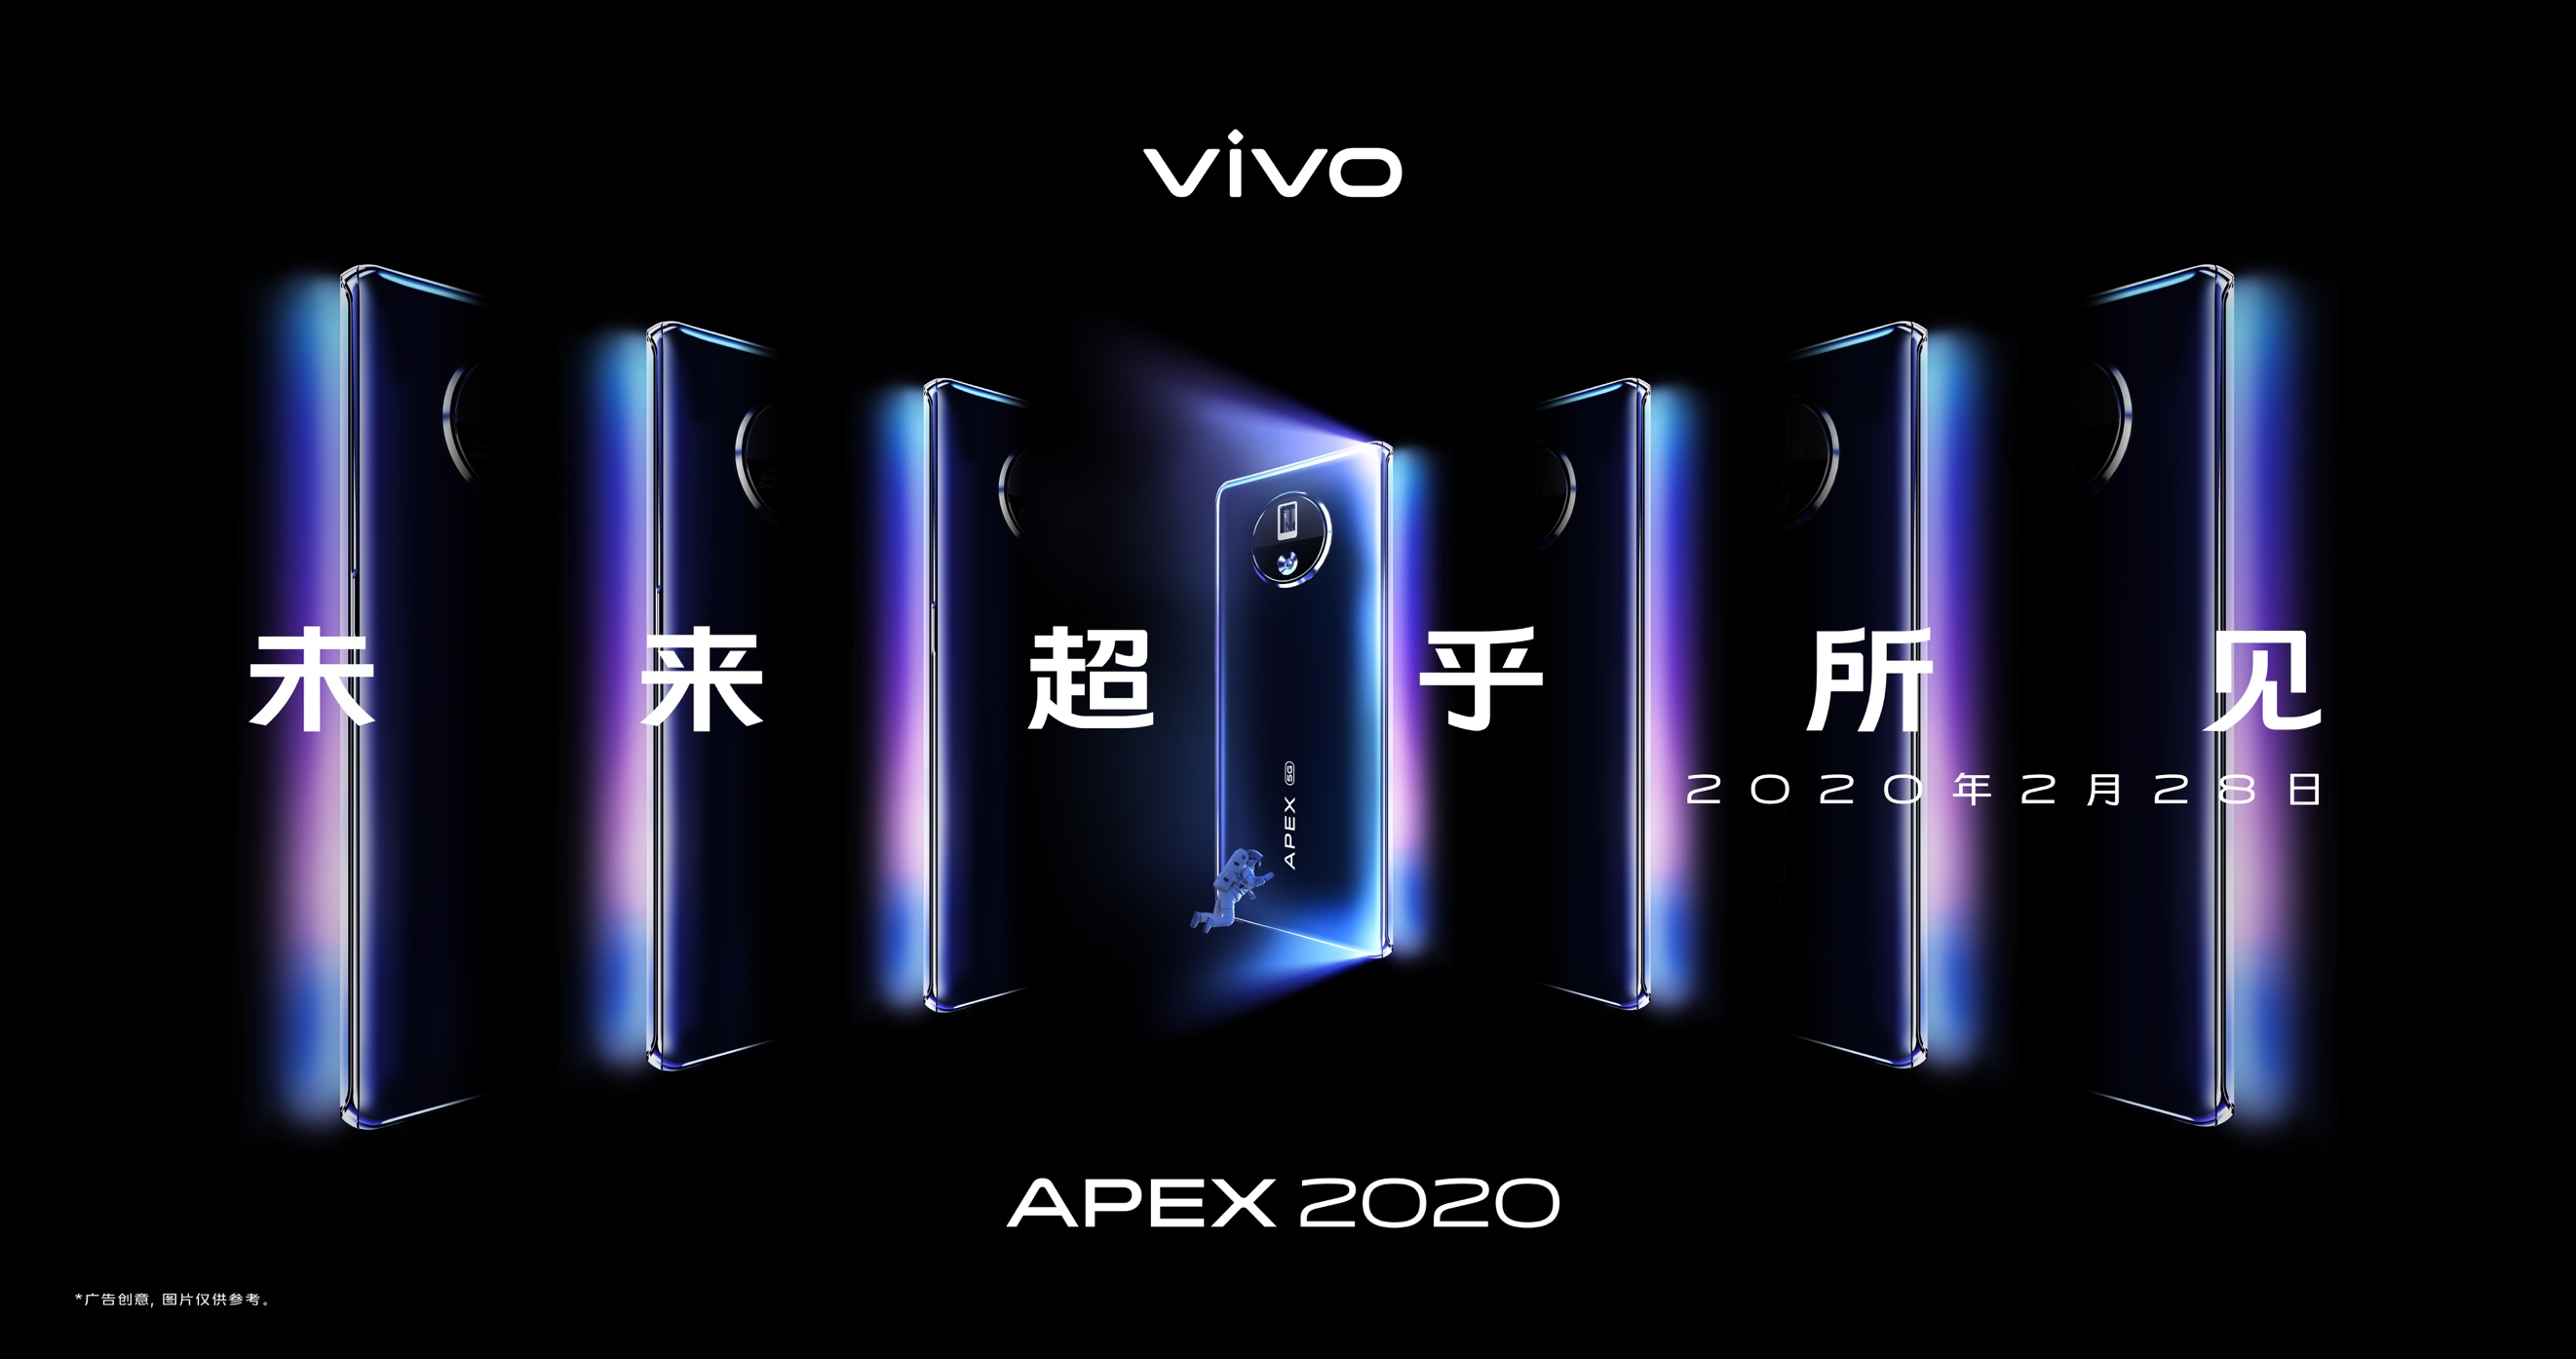 【口碑家电】vivo概念机APEX2020即将线上发布，神秘数字“120”引人遐想